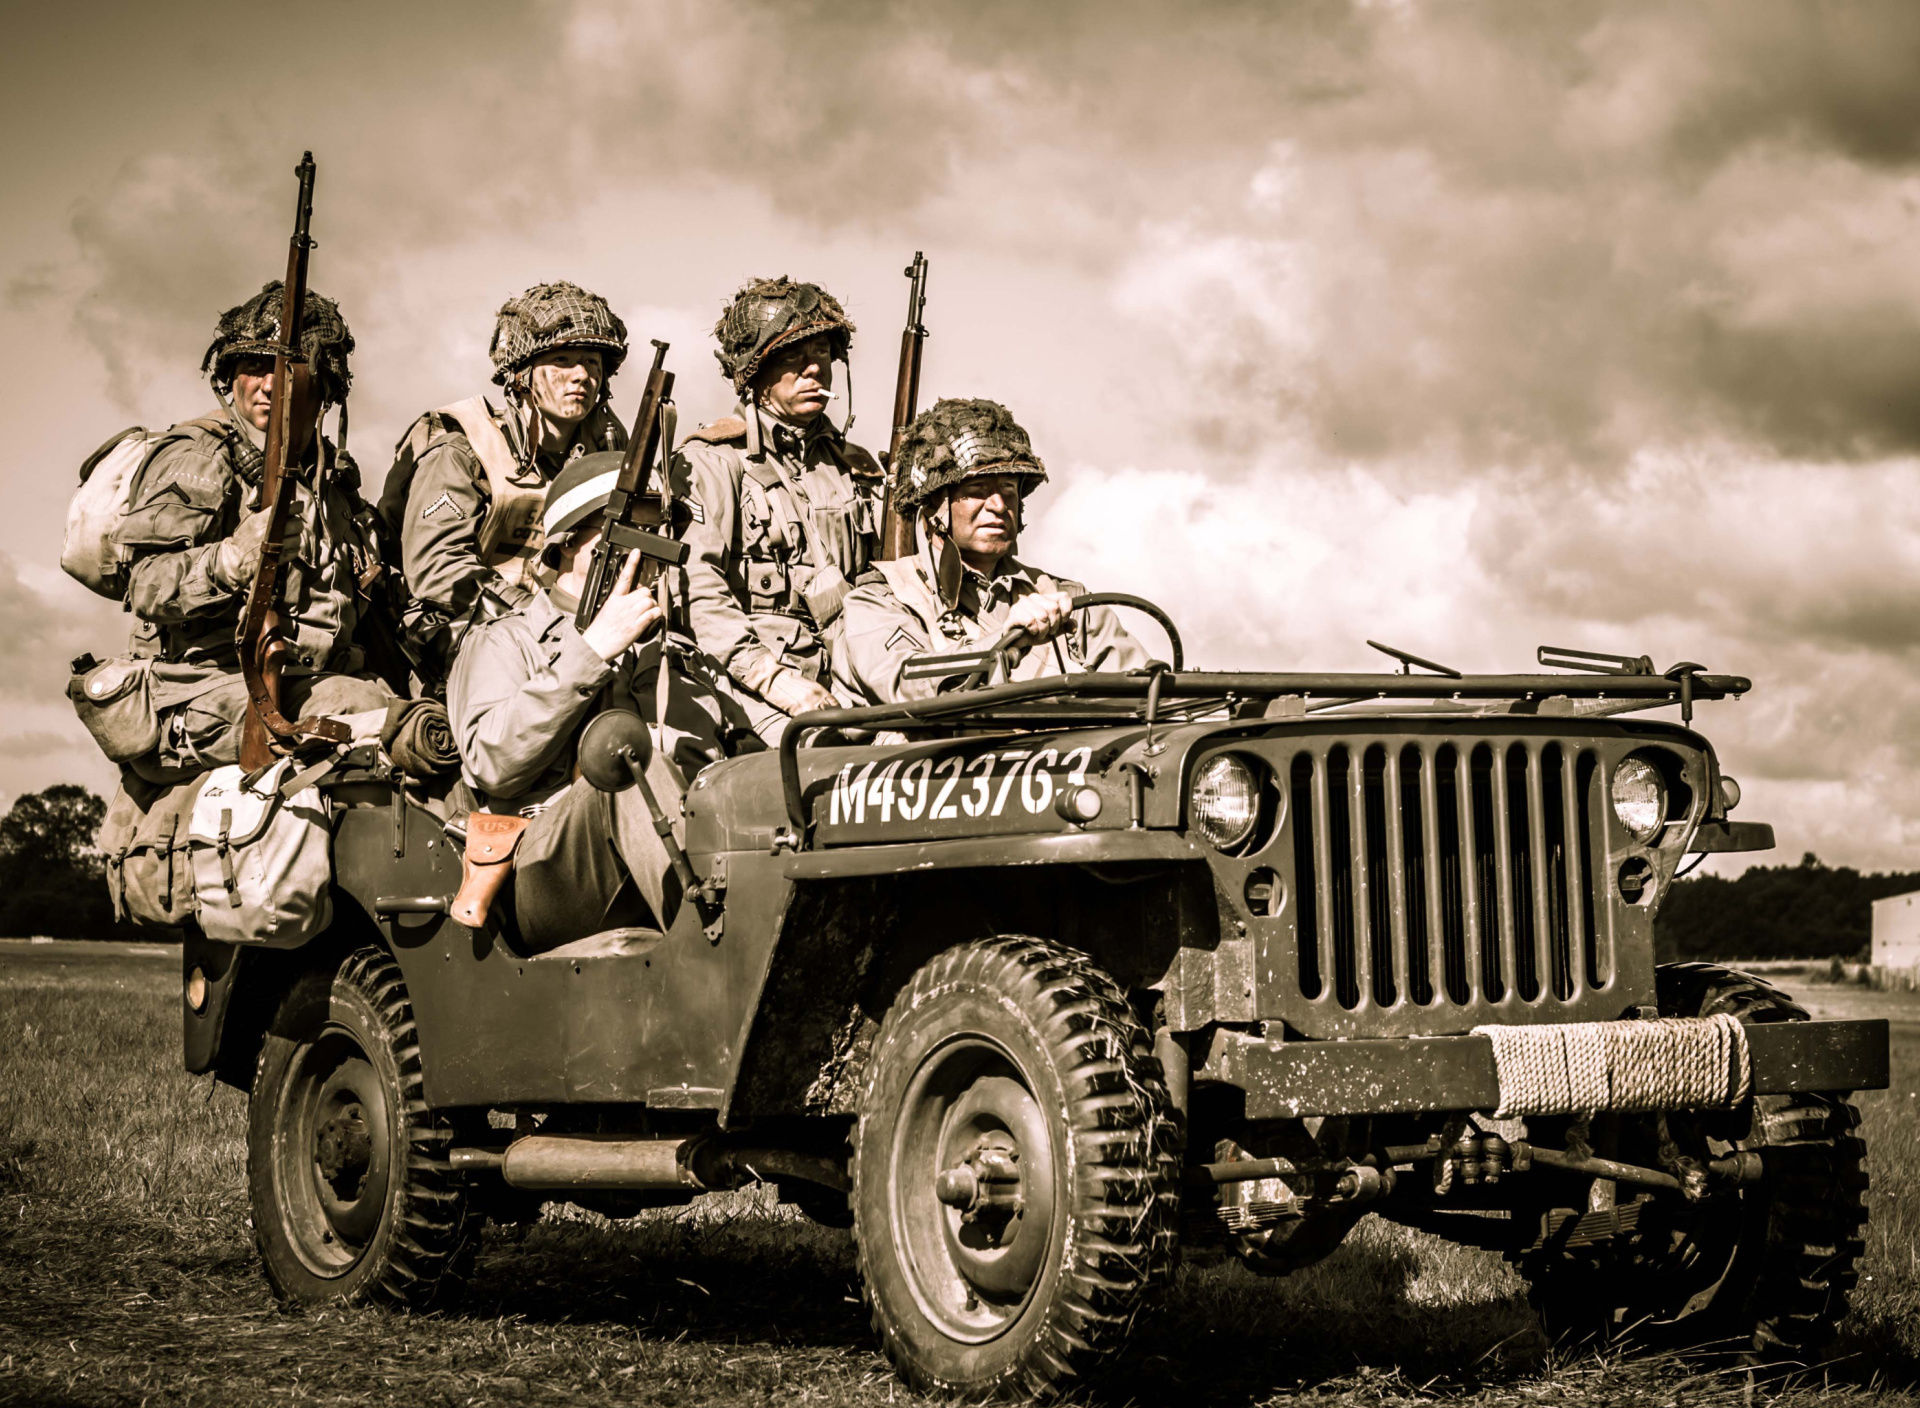 Обои Soldiers on Jeep 1920x1408